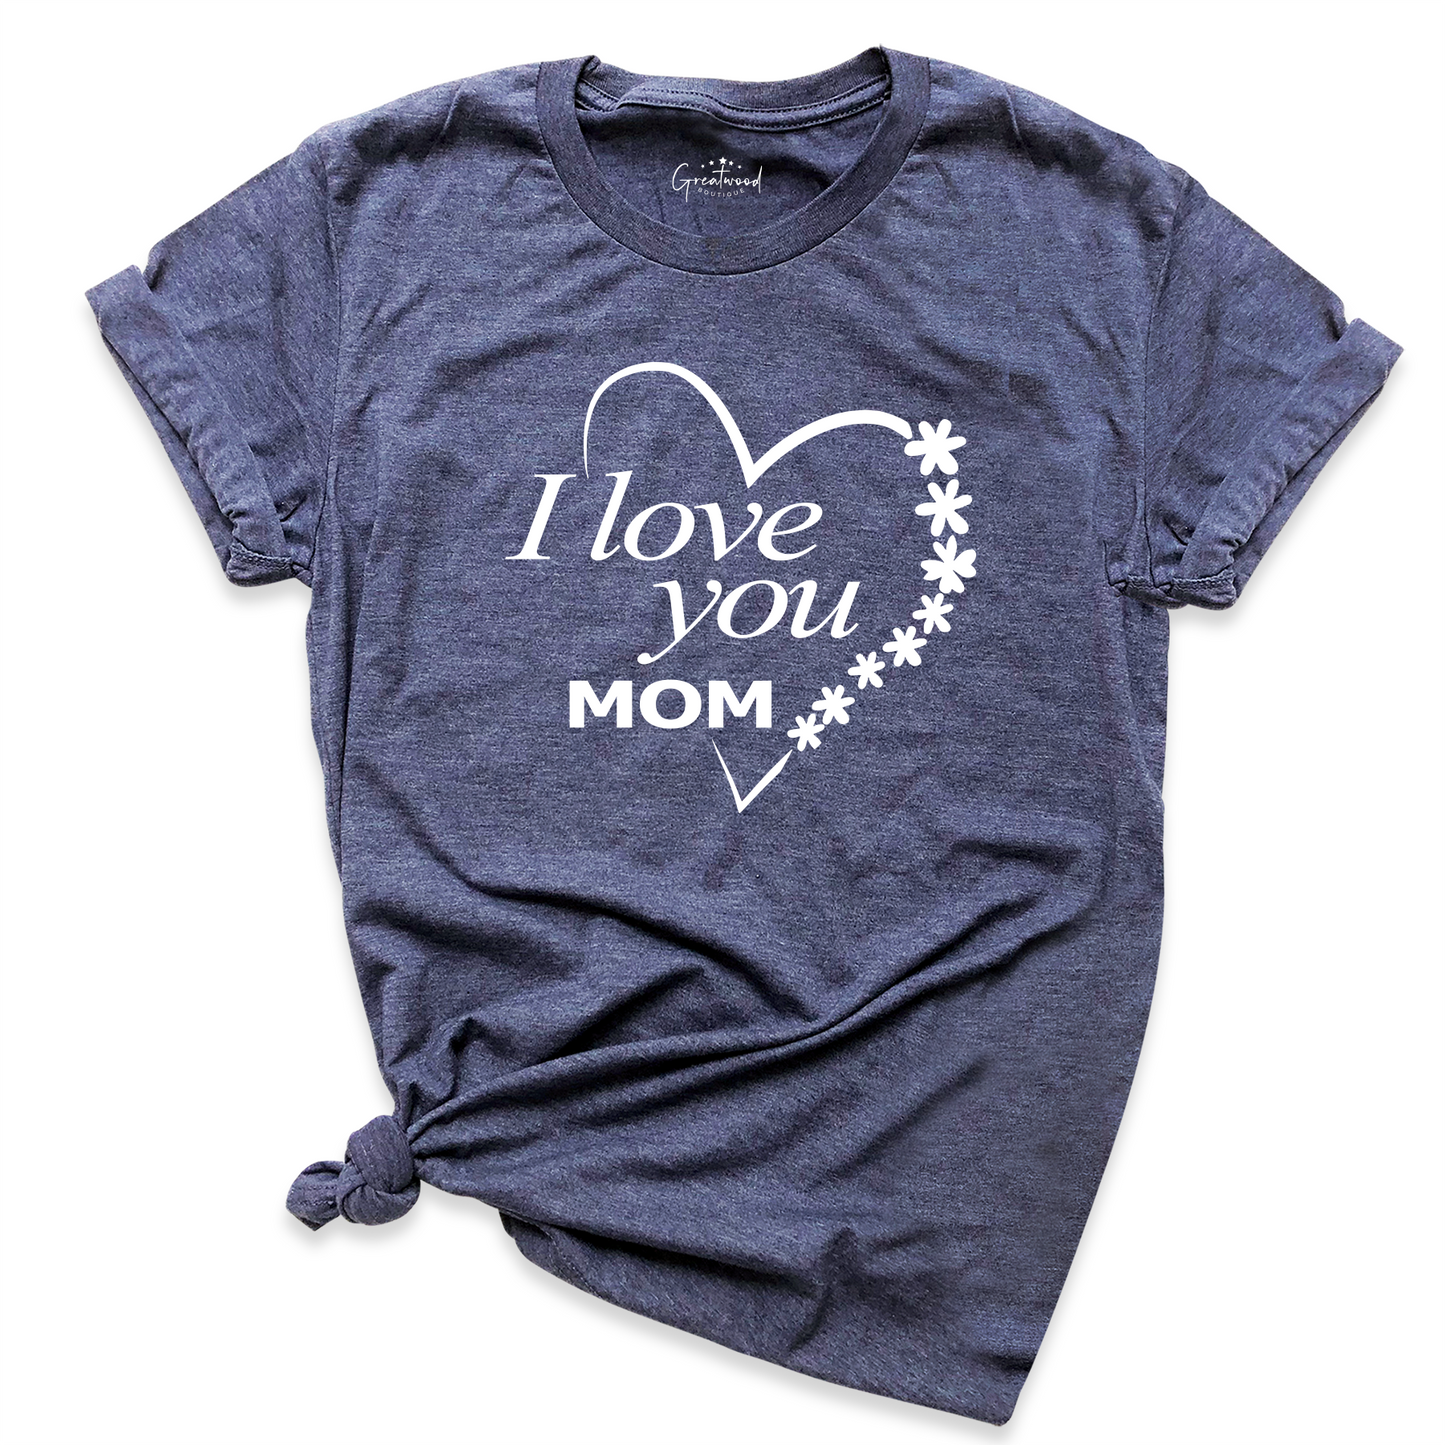 I Love You Mom Shirt